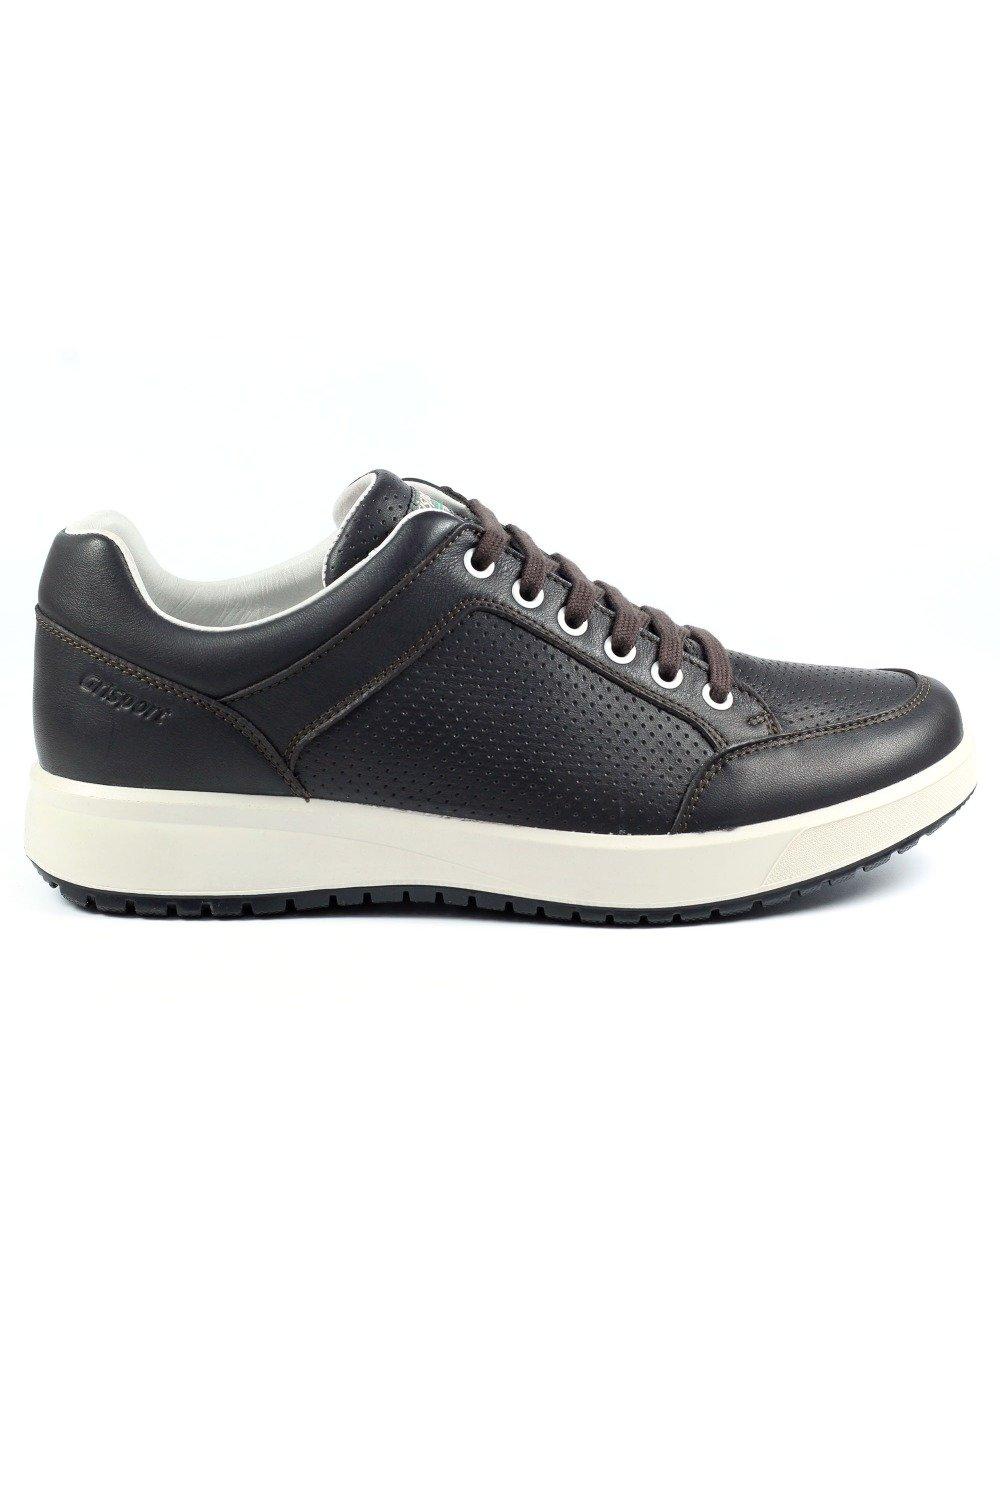 Кроссовки Leather Active Shoes Grisport, коричневый